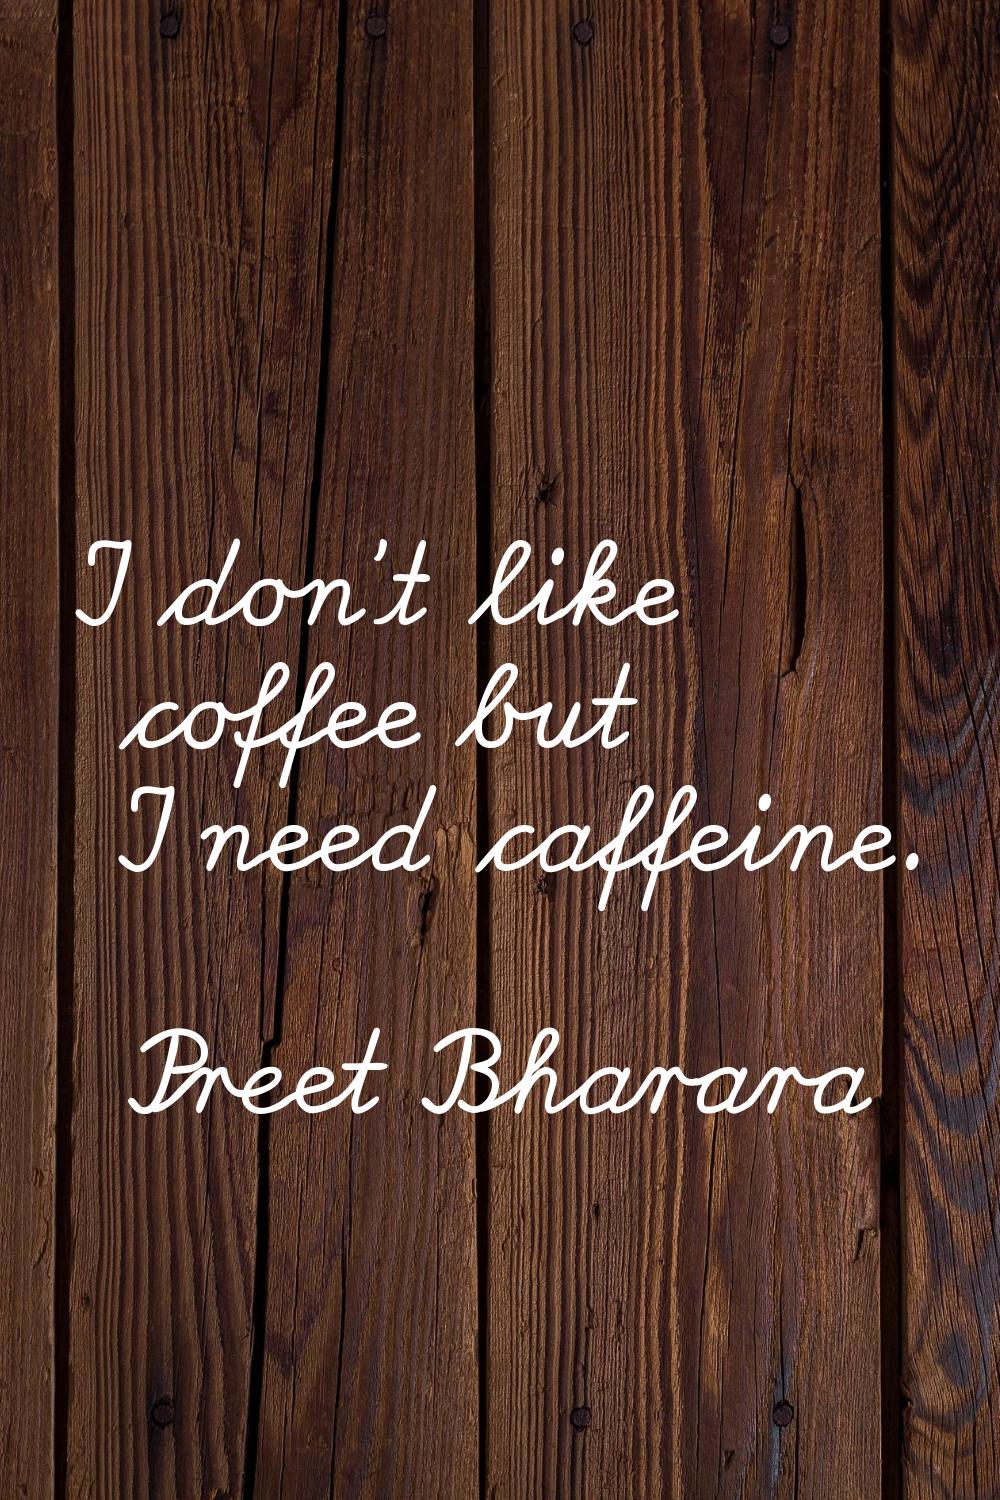 I don't like coffee but I need caffeine.